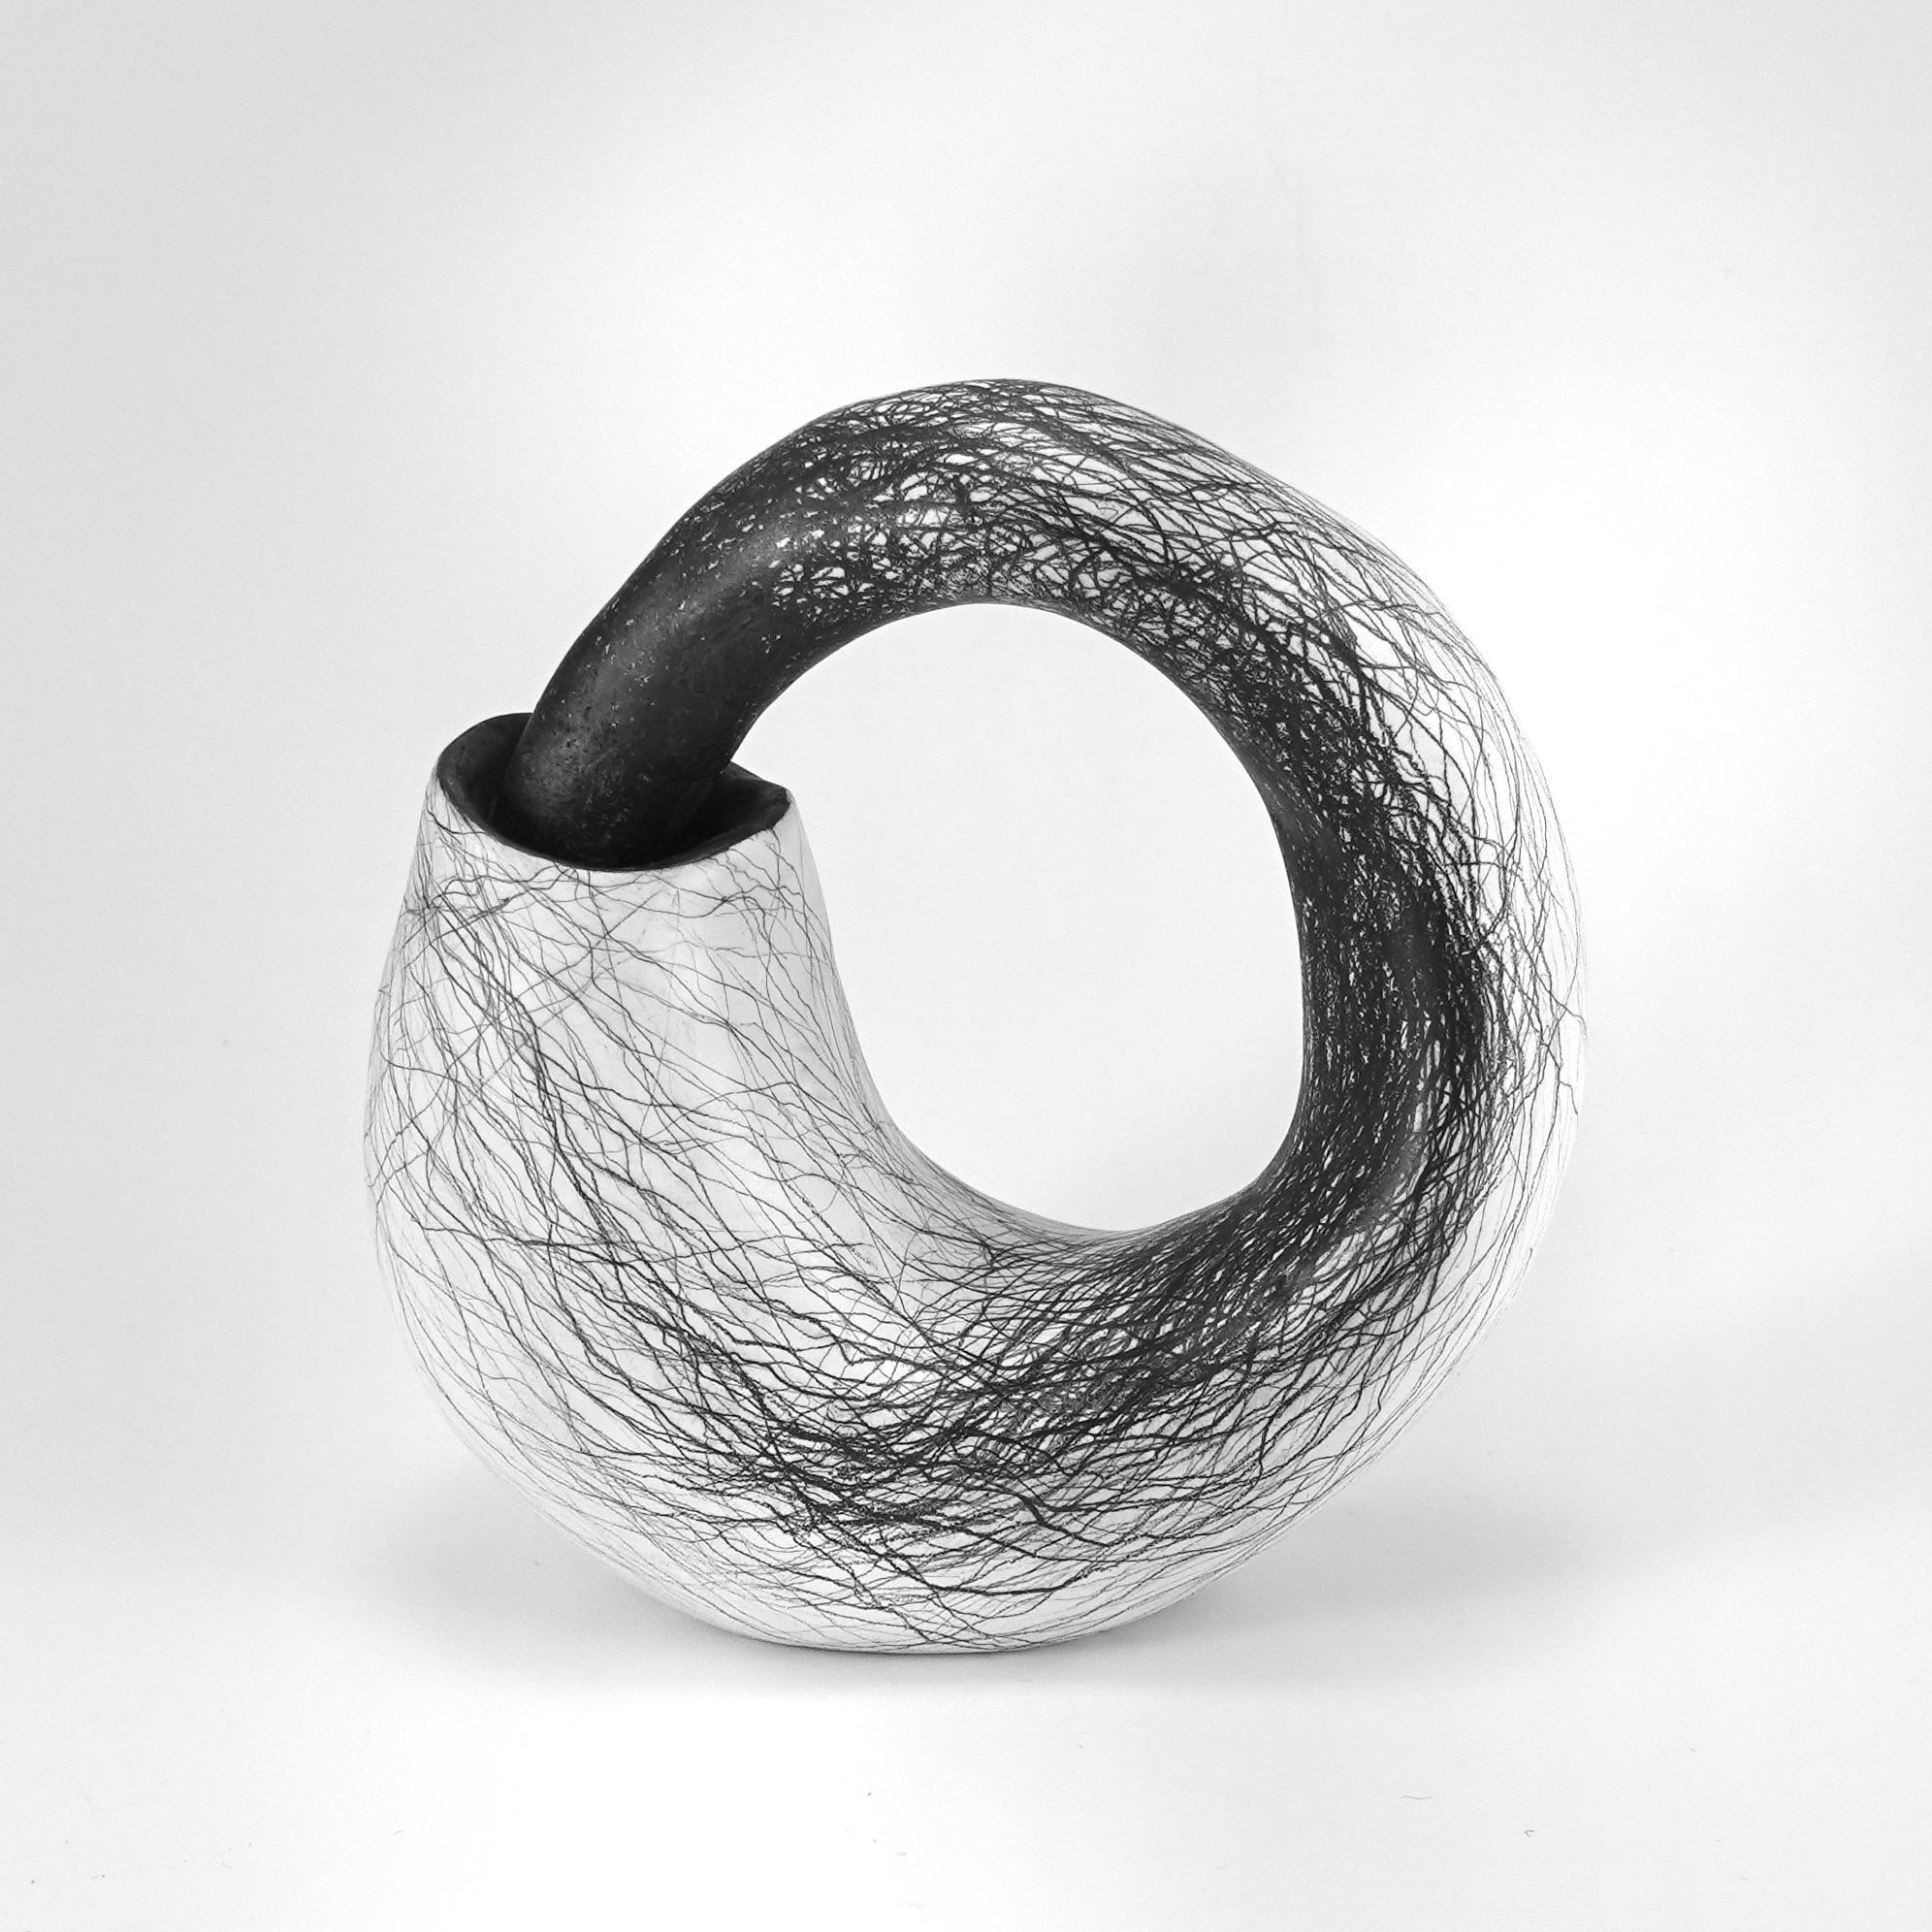 Abstract Sculpture Judi Tavill - Sculpture abstraite minimale en noir et blanc : "Curl" (boucle)